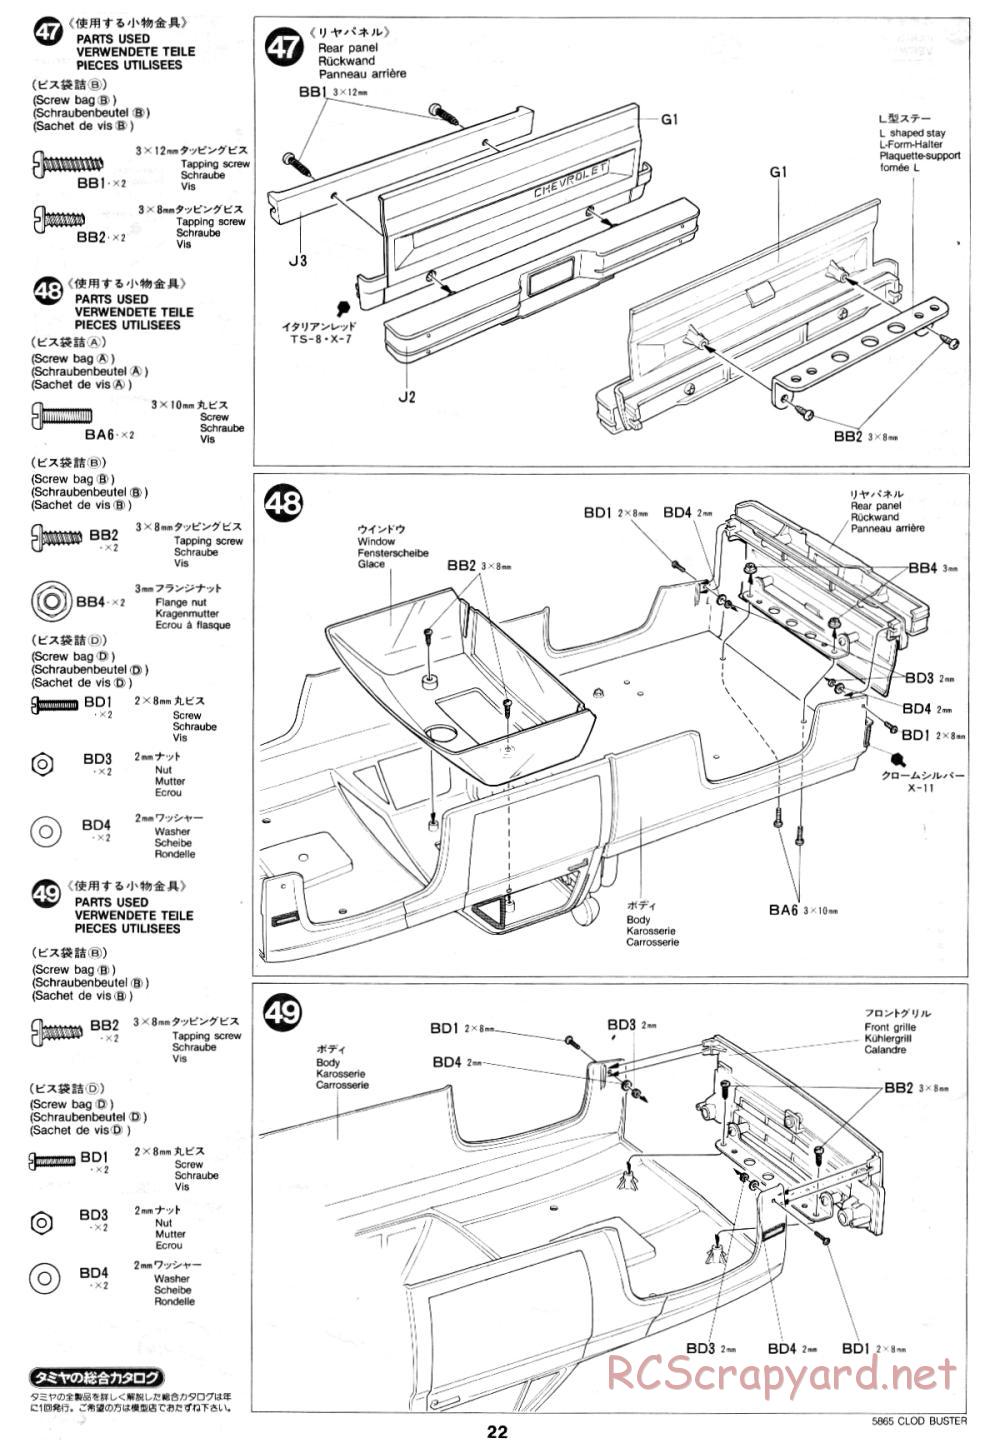 Tamiya - Clod Buster - 58065 - Manual - Page 22